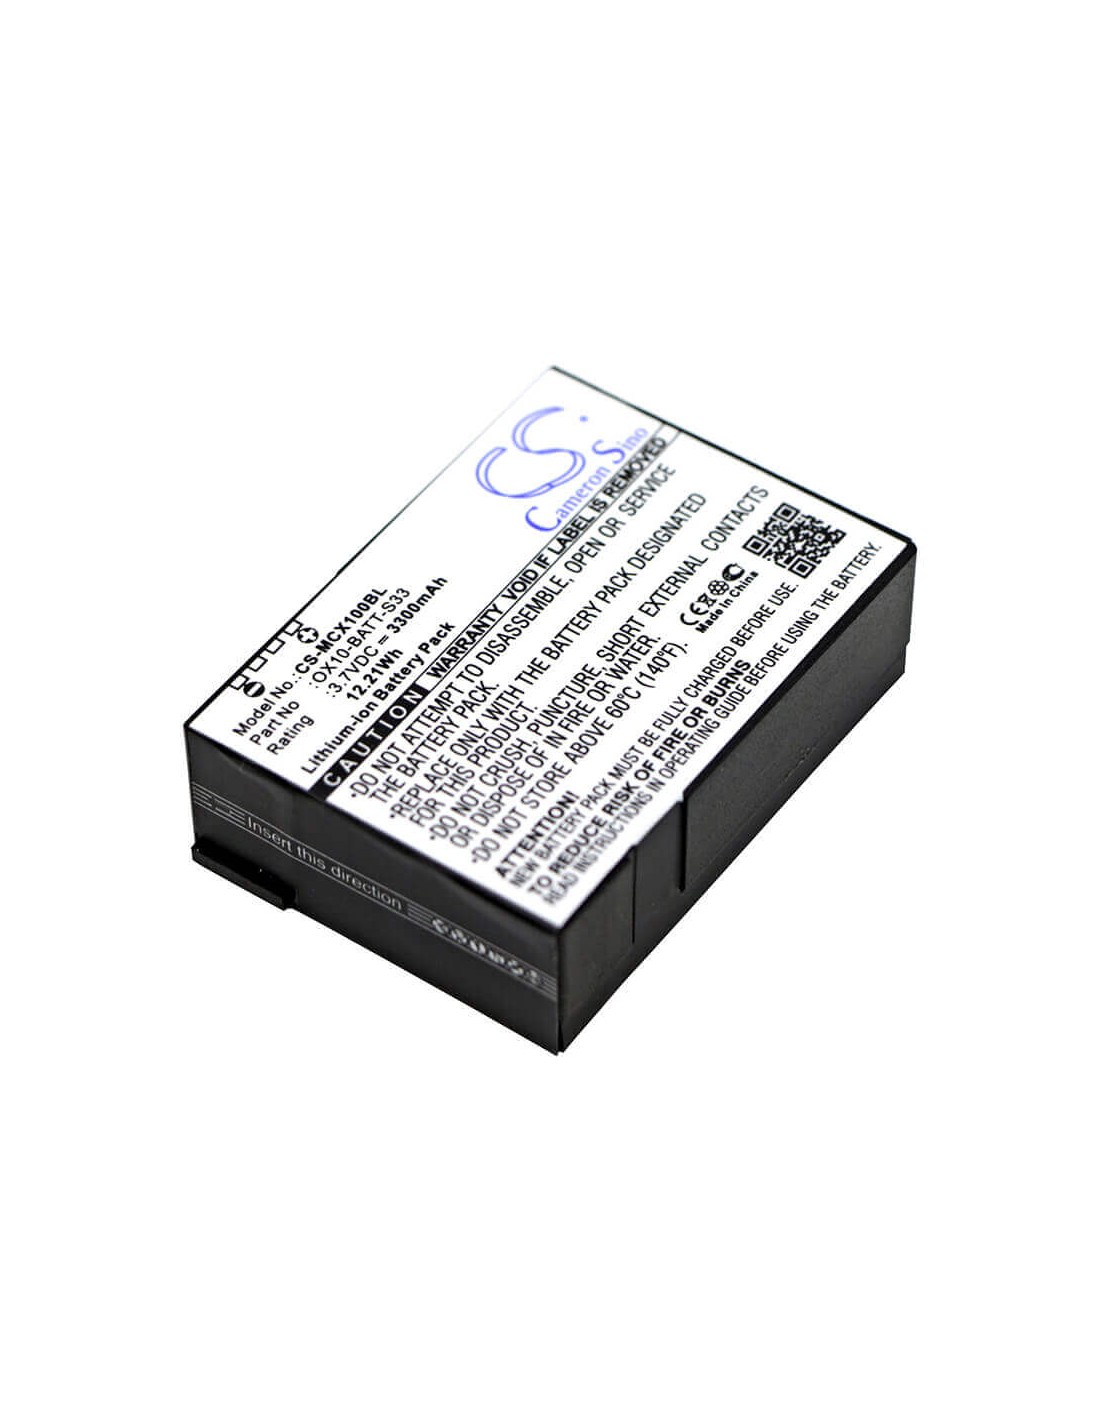 Battery for M3 Mobile, Orange, Ox10, Ox10 Rfid 3.7V, 3300mAh - 12.21Wh